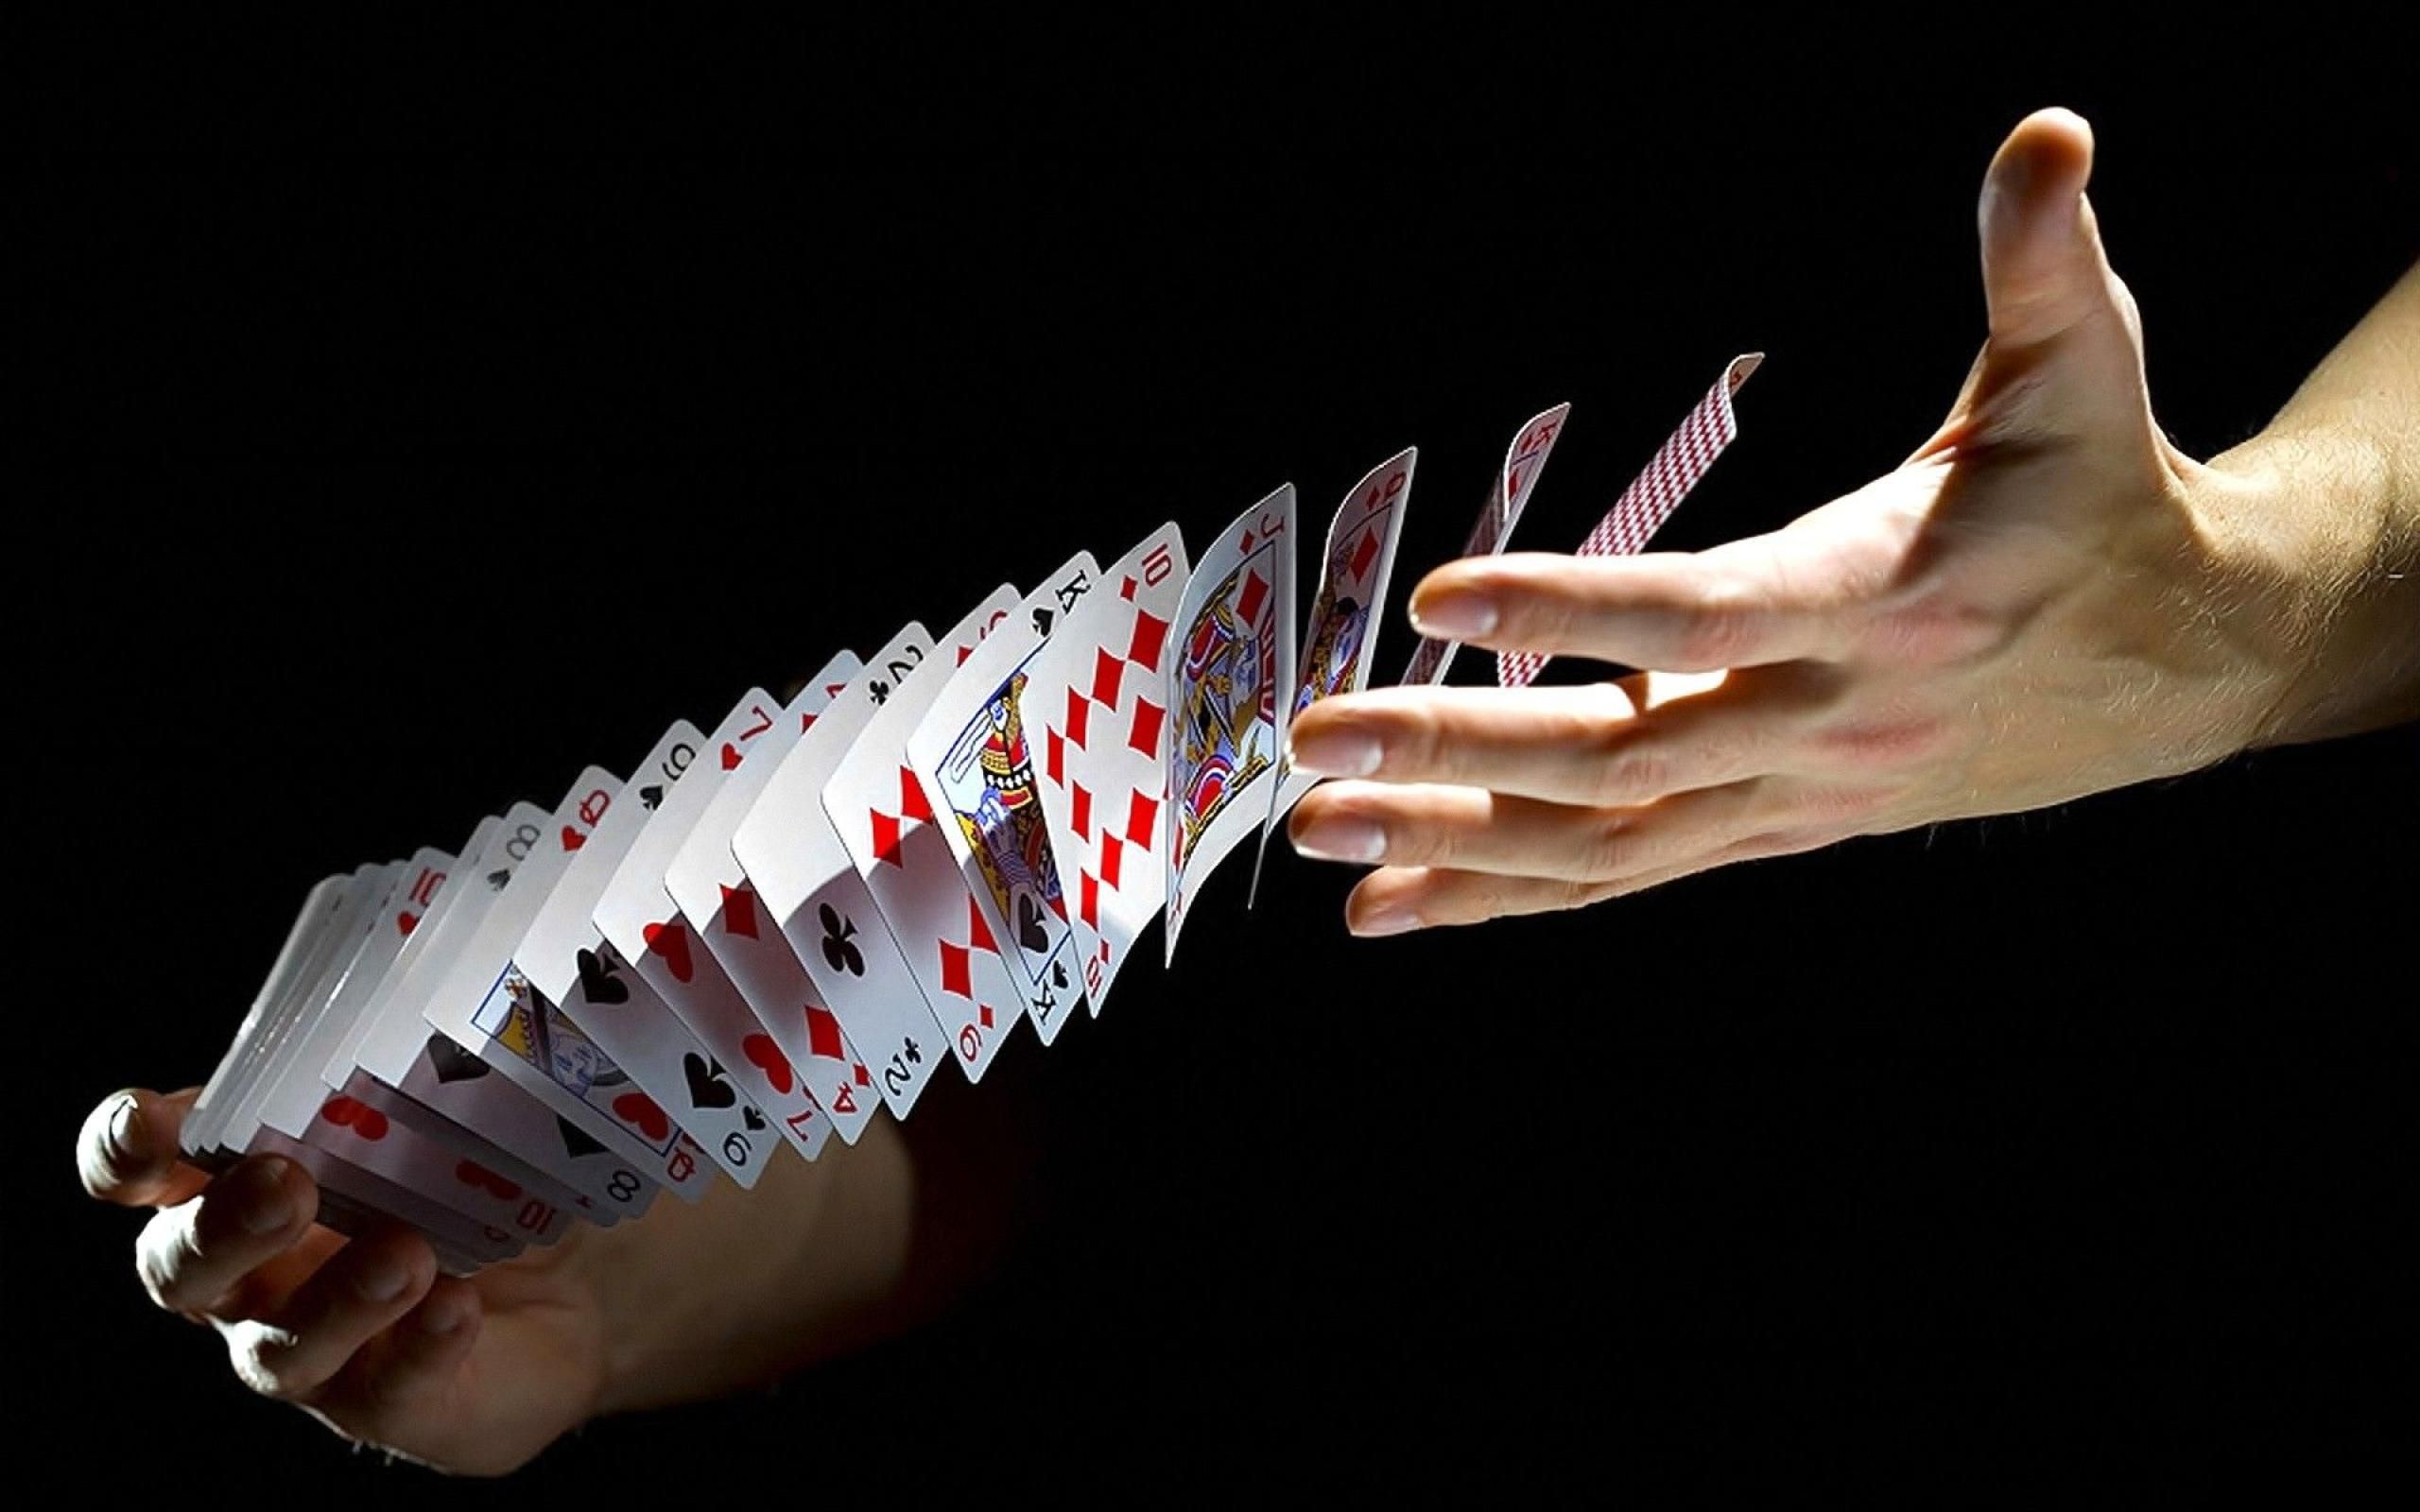 Wallpaper Palying Cards Poker Playing Design 2560x1600. Magic tricks, Poker, Card tricks